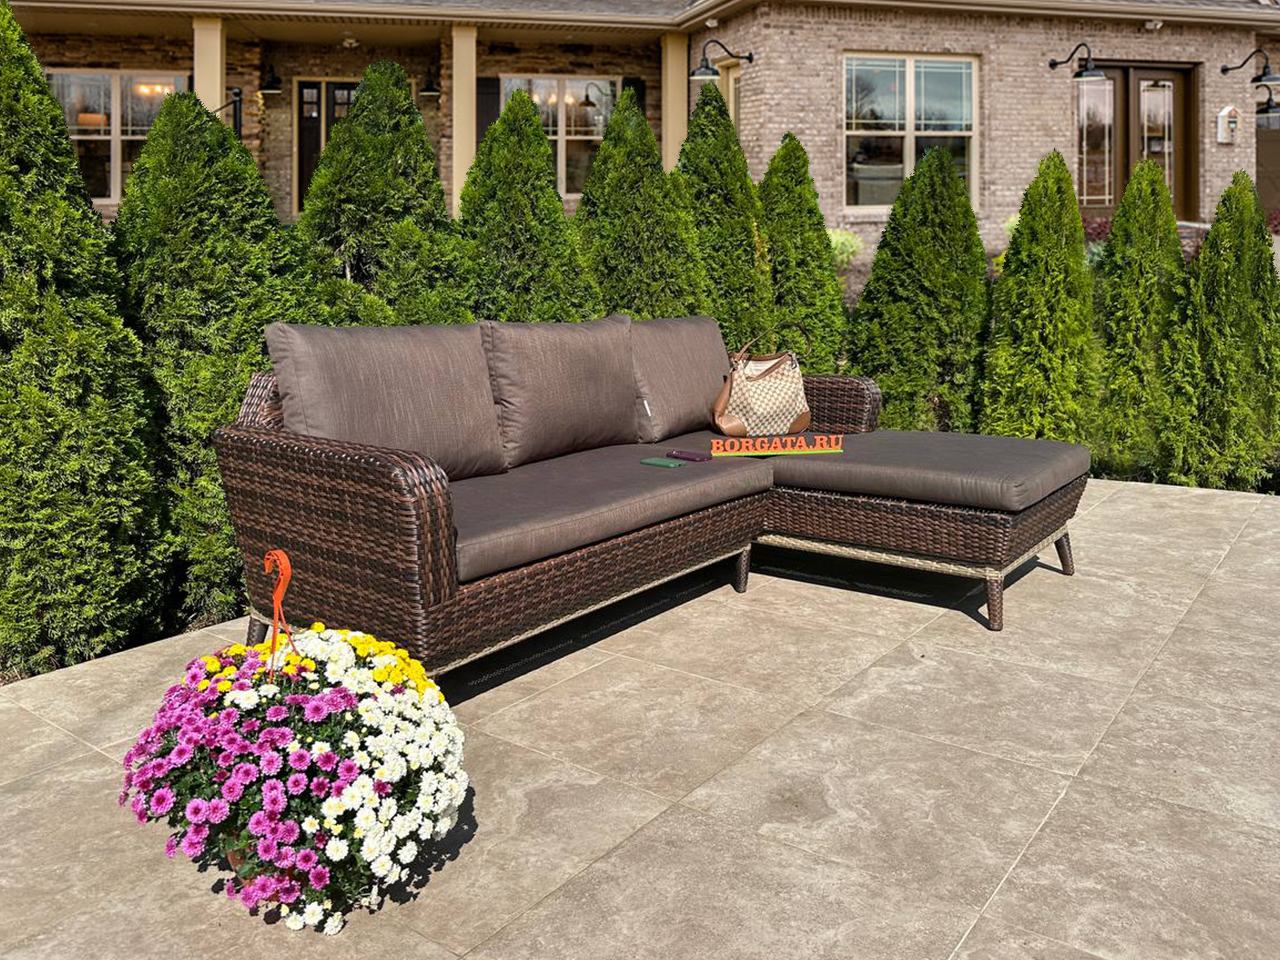 Угловой диван с оттоманкой 250*90*80 BABYLON LUX brown/nature для обустройства лаунж зоны в патио или на террасе